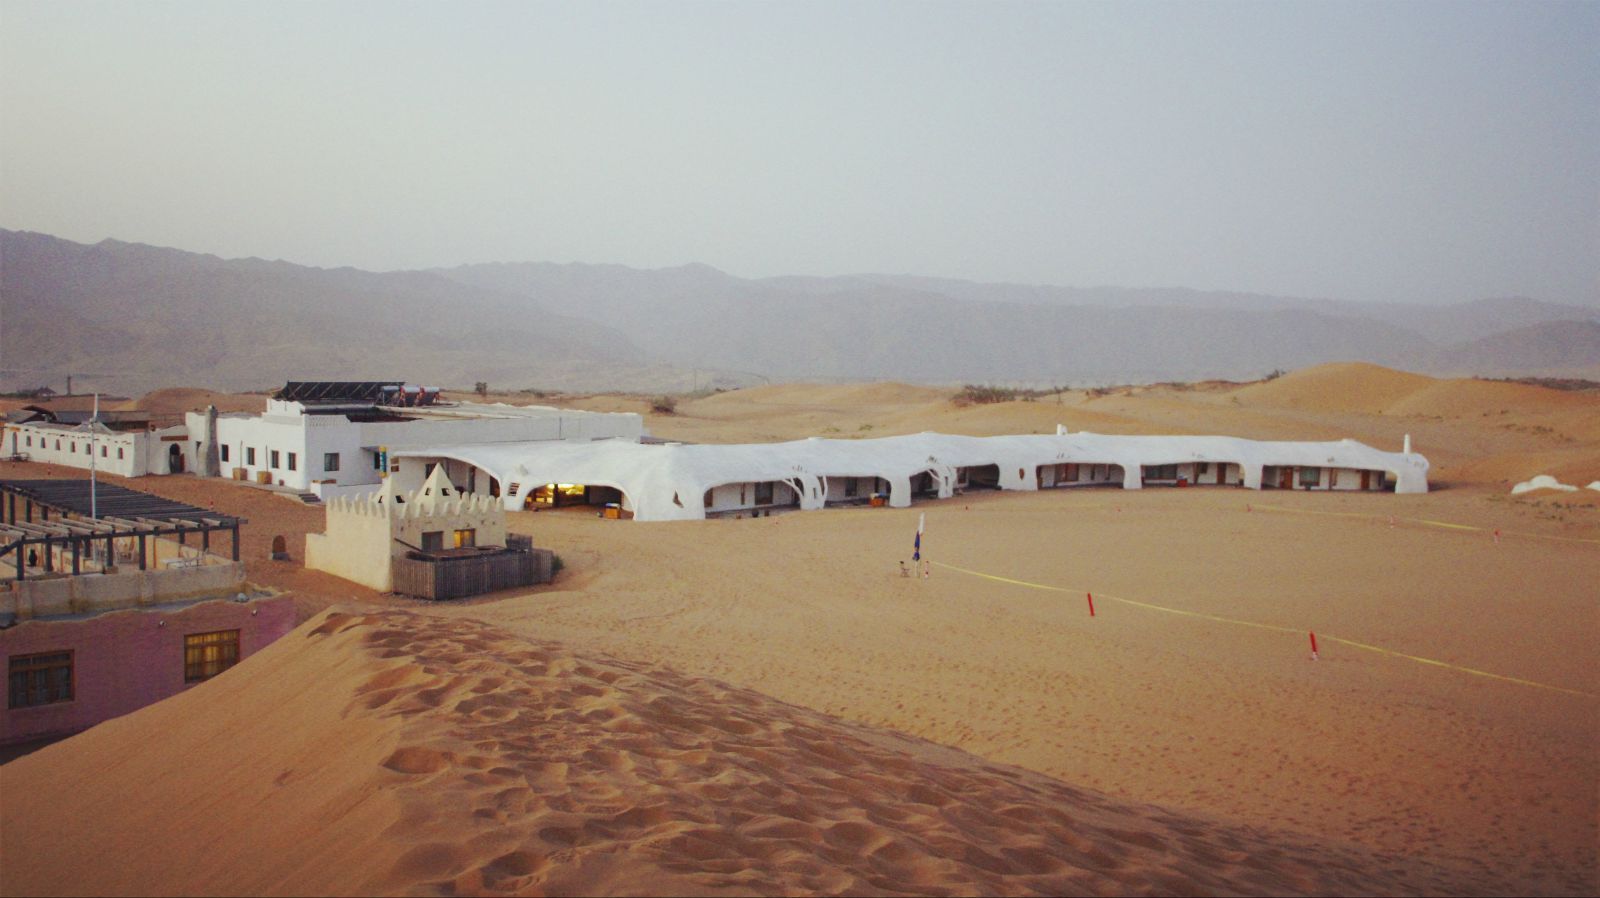 沙漠酒店 沙坡头在腾格里沙漠的边缘,分沙漠和黄河两个区域,中间被